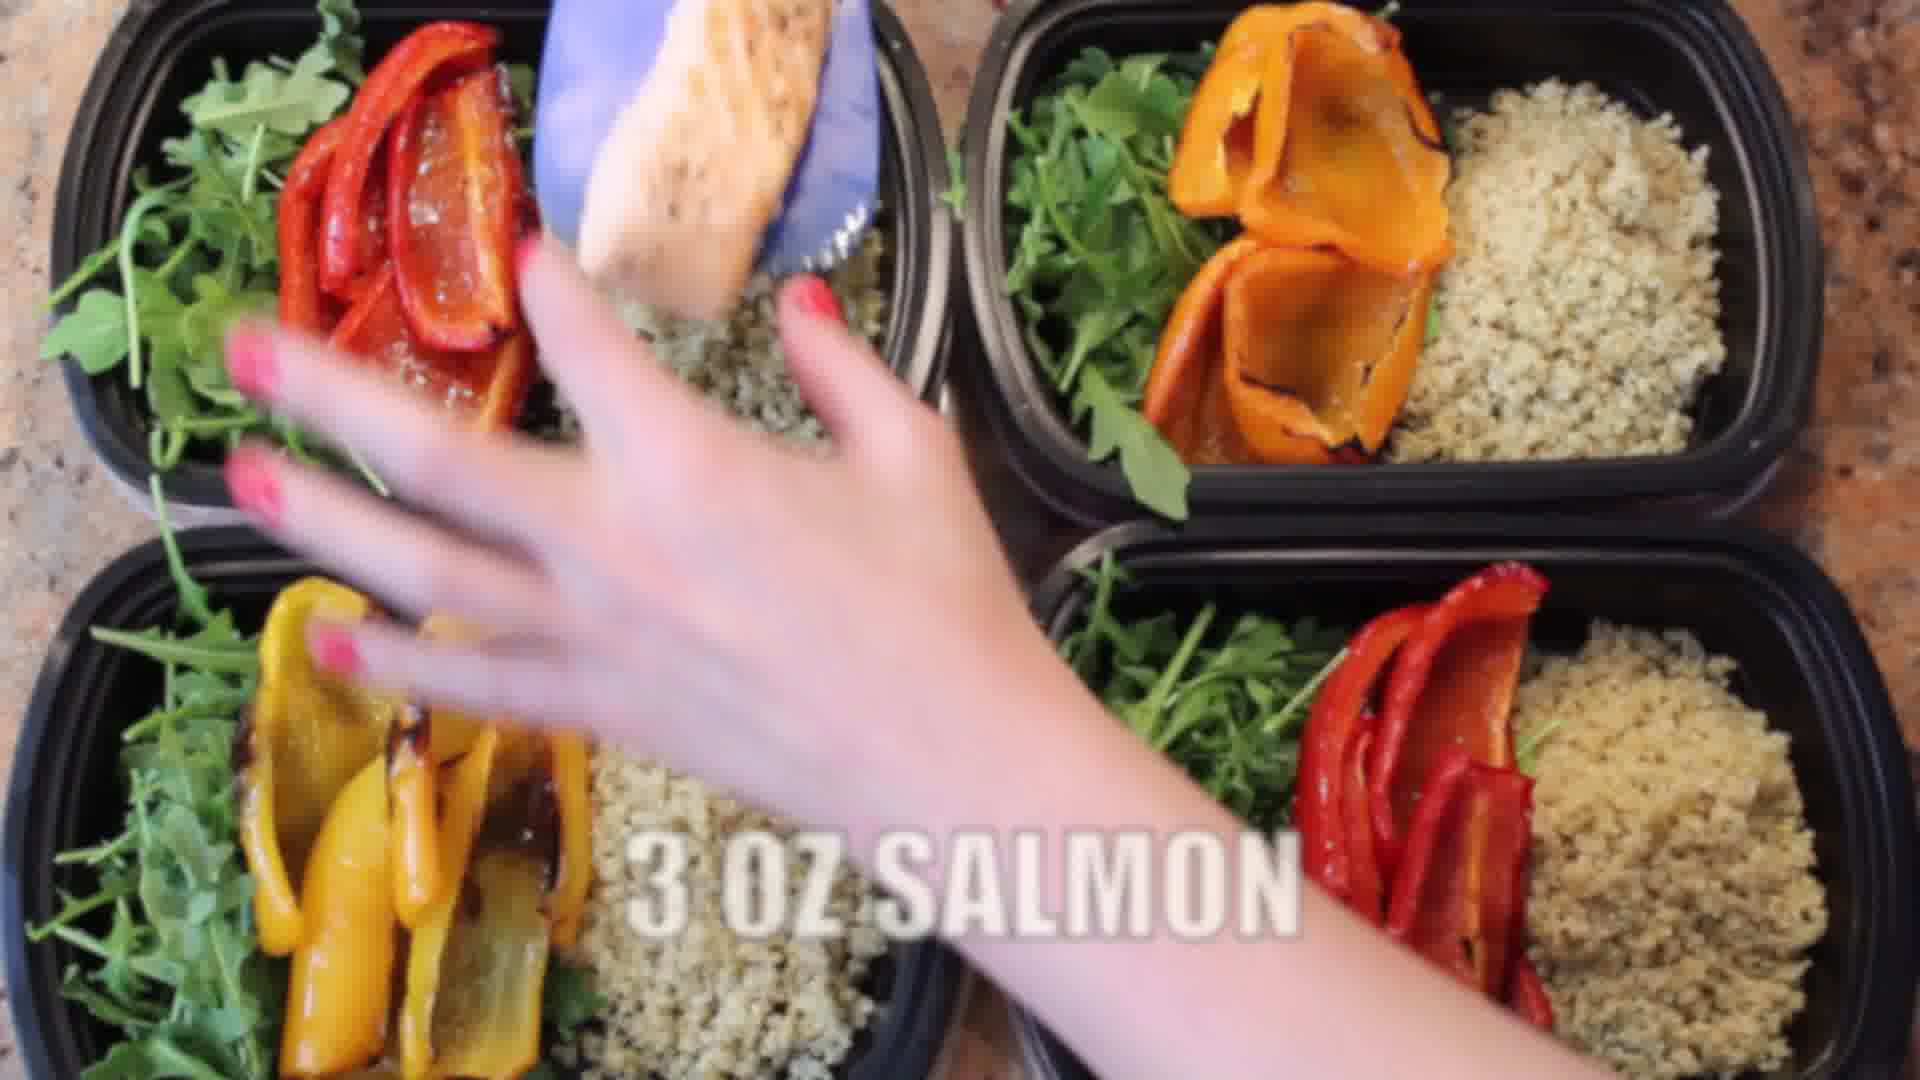  salmon meal prep